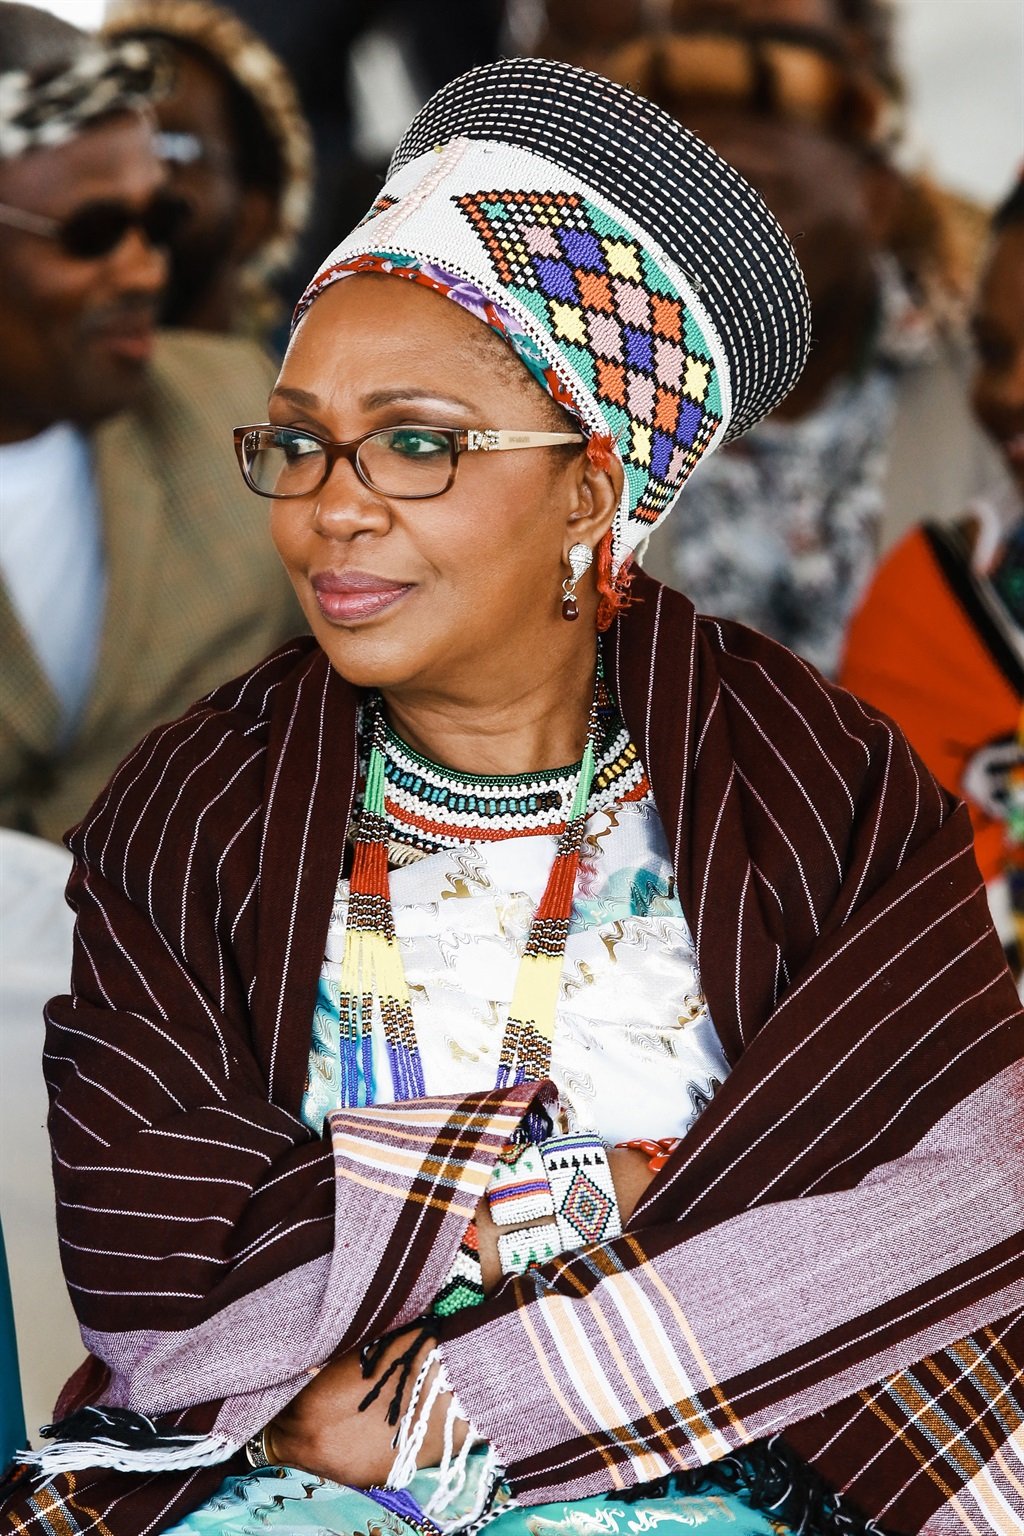 GALLERY Remembering Queen Shiyiwe Mantfombi Dlamini Zulu through